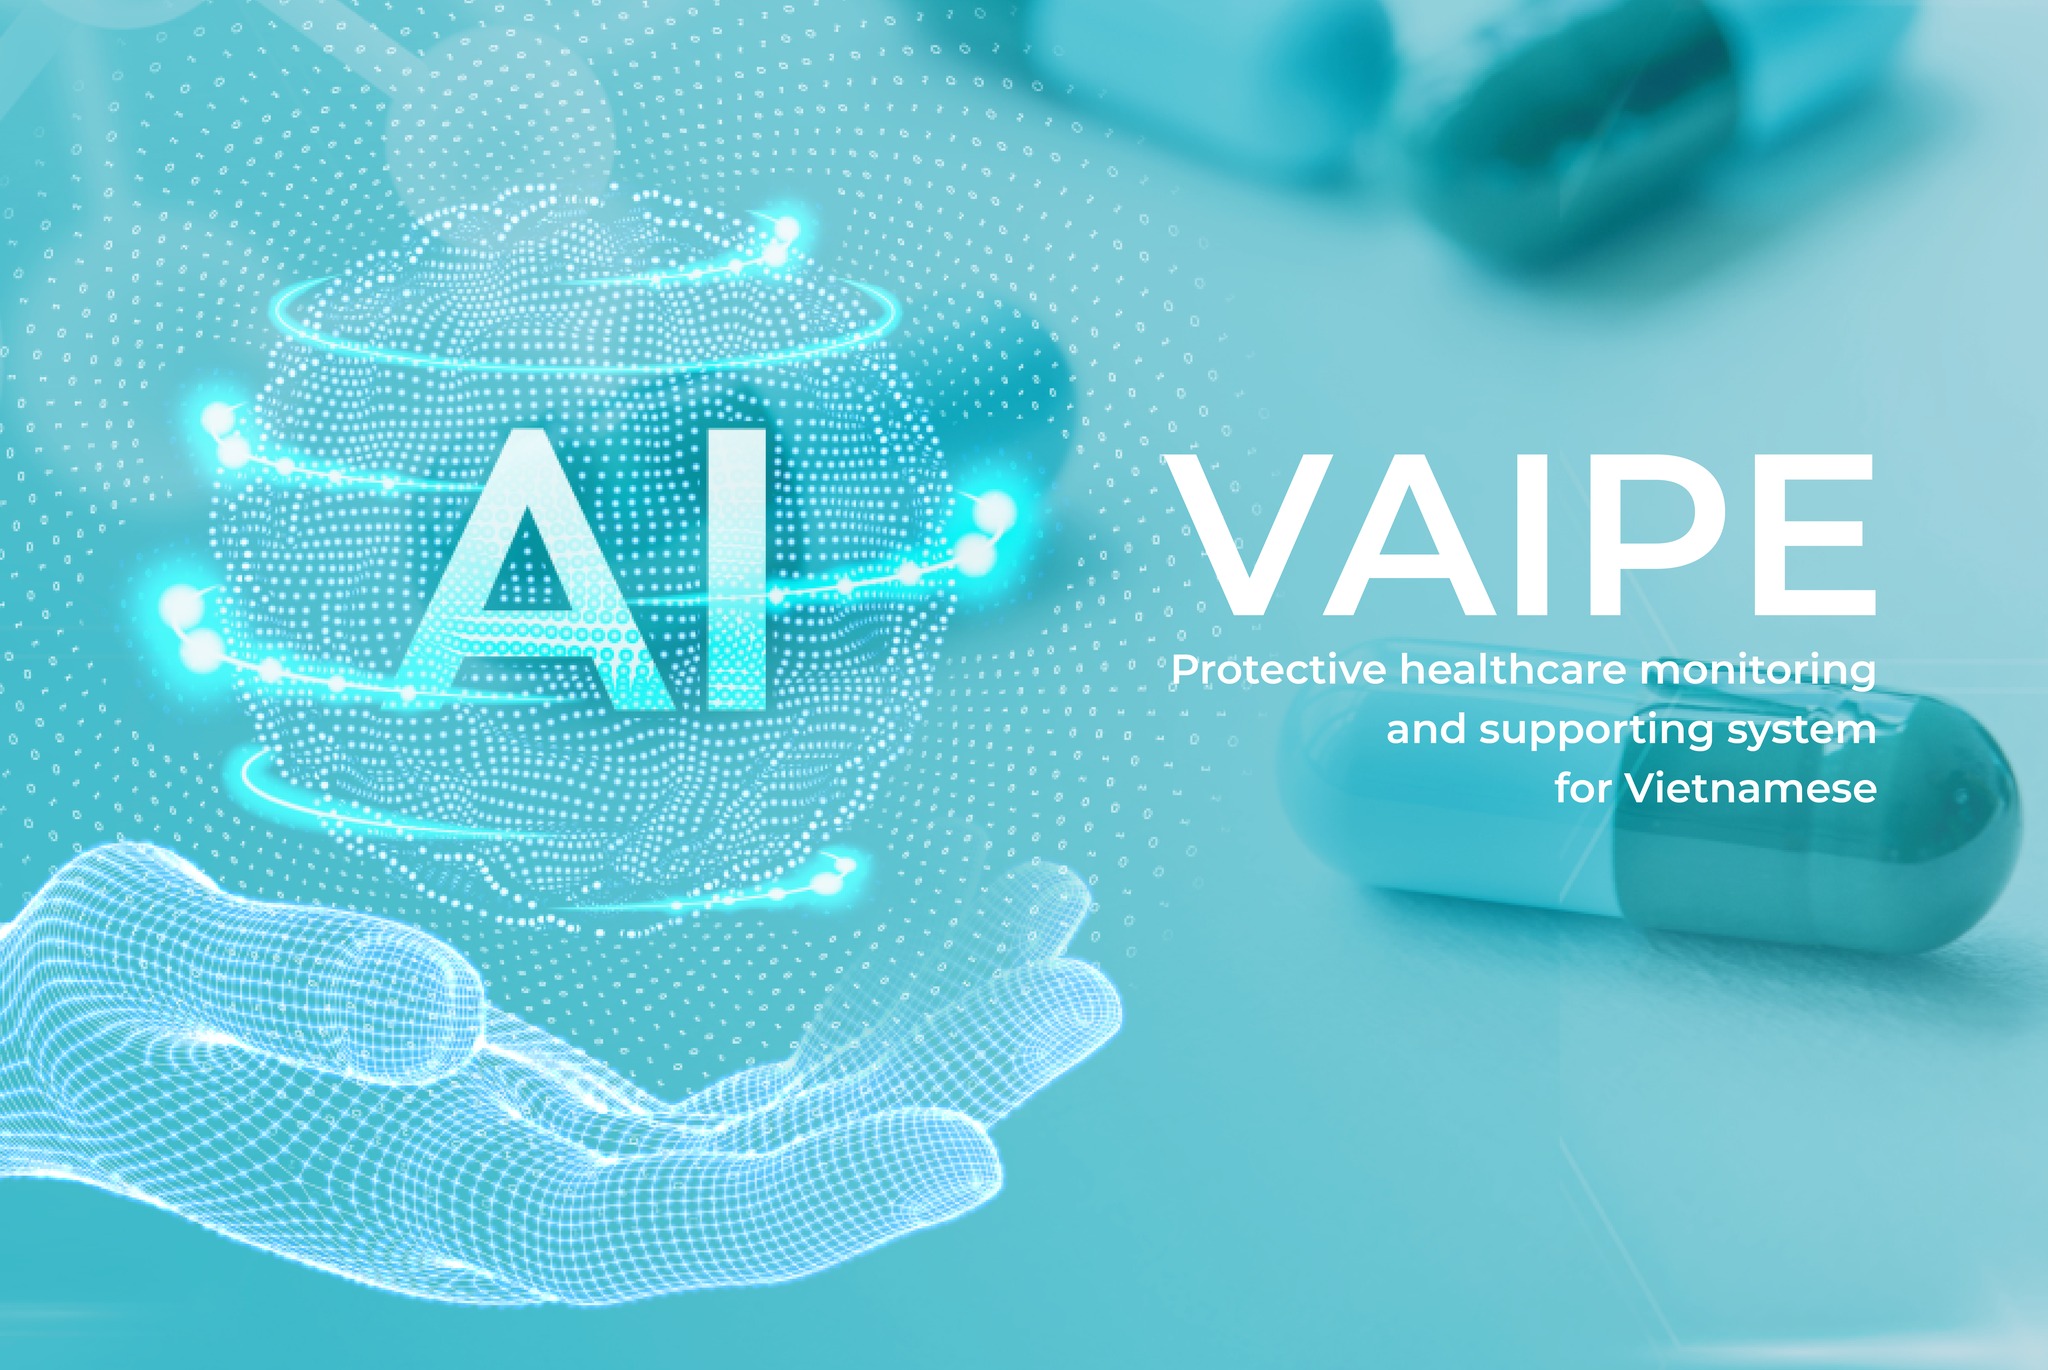 Dự án VAIPE được vinh danh là dự án Khoa học Công nghệ tiêu biểu của Quỹ VinIF trong 5 năm